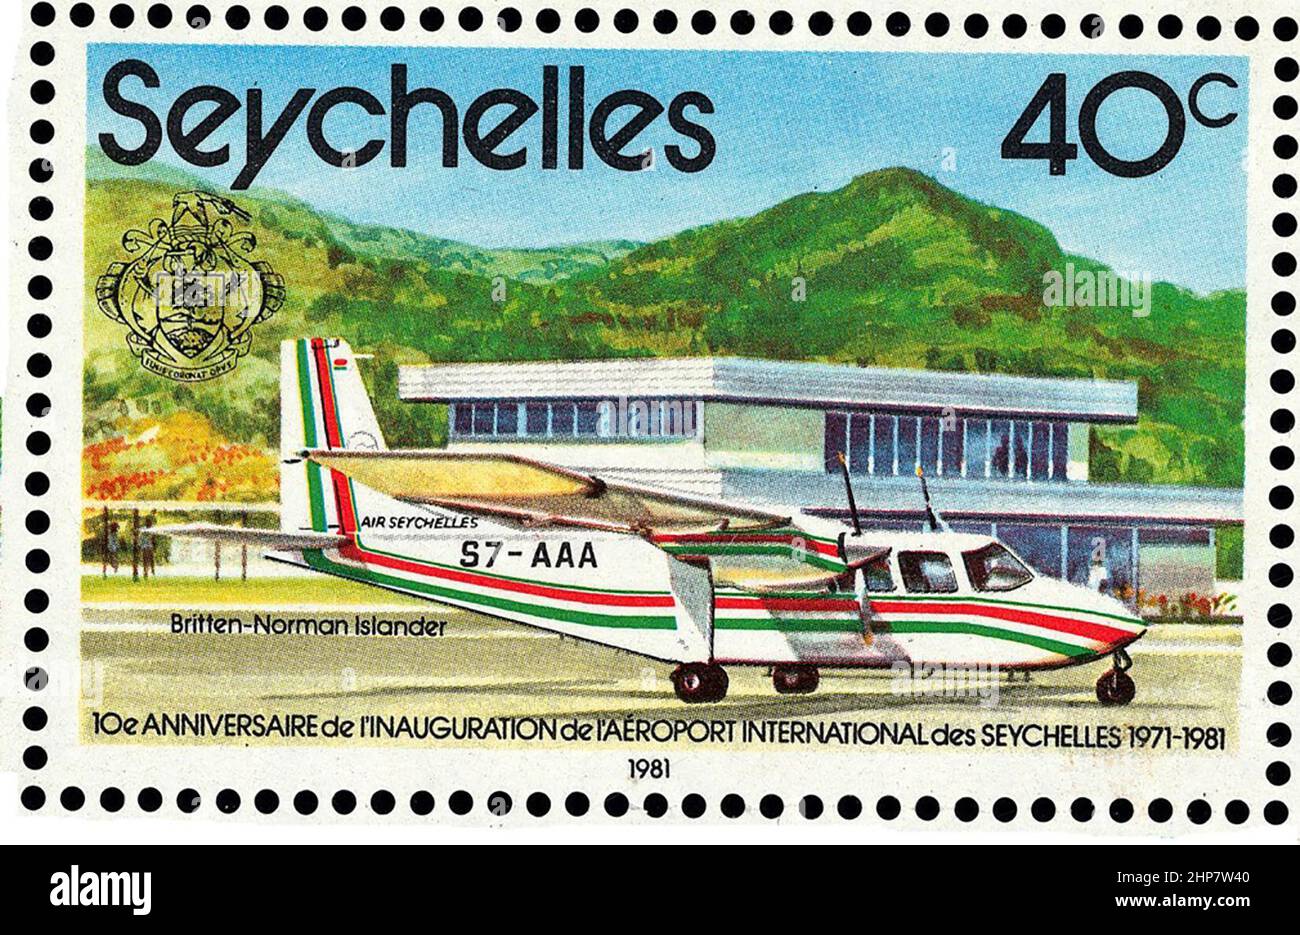 Timbre des Seychelles de 1981, commémorant l'ouverture de l'aéroport international des Seychelles. L'avion dans le timbre est un Britten-Norman Islander Banque D'Images